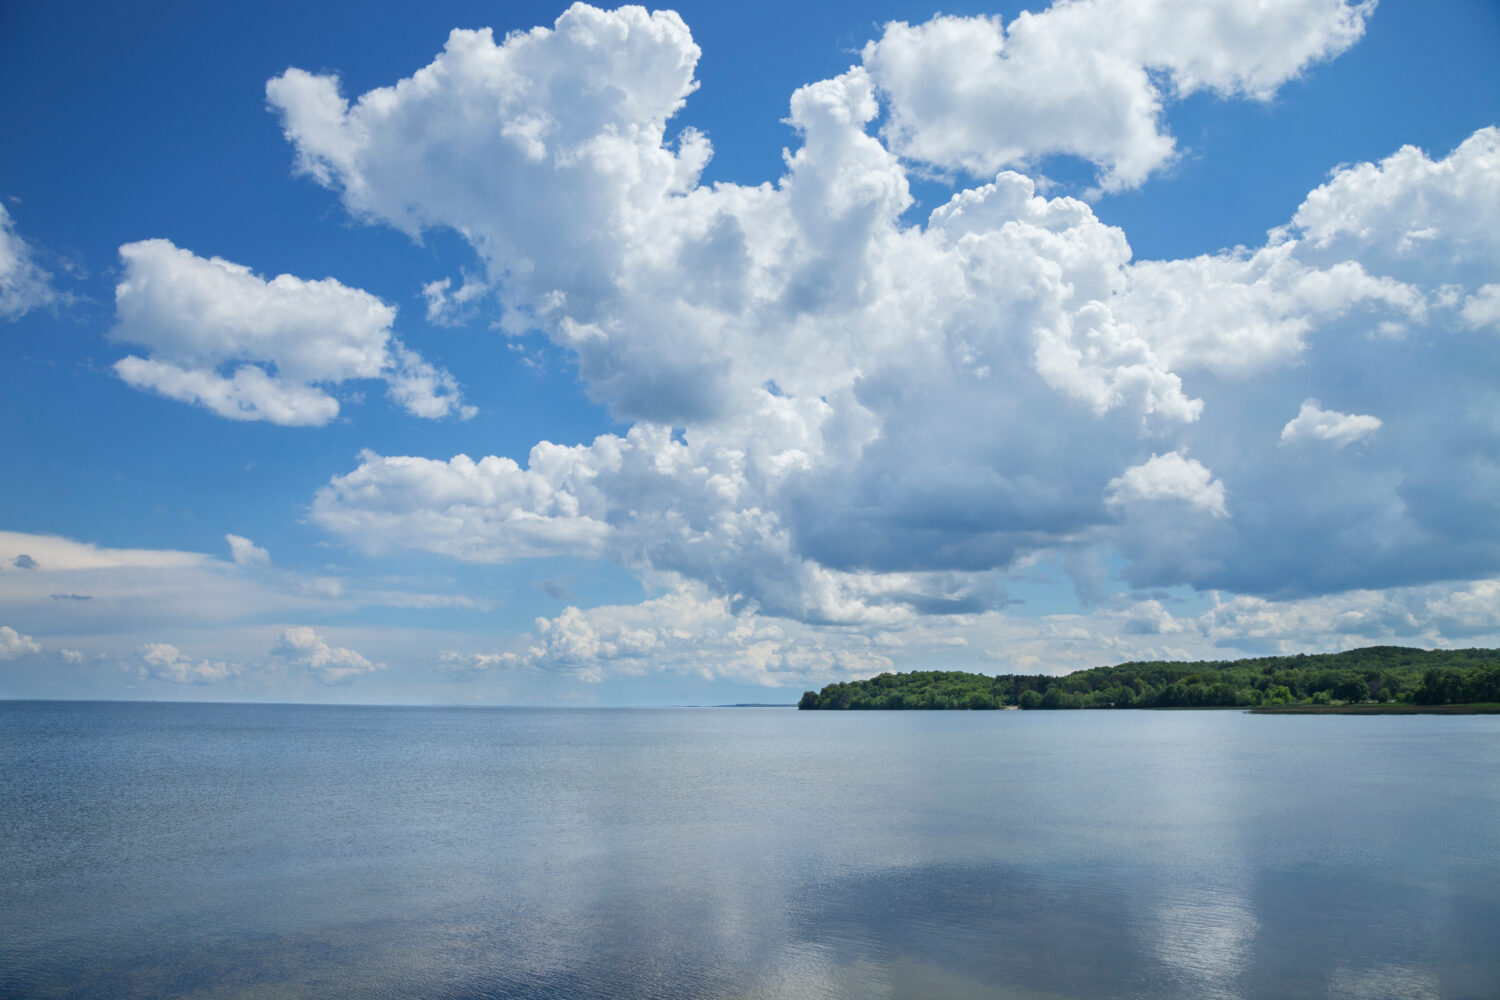 Mille Lacs Lake lato sud-ovest sotto le nuvole drammatiche nel Minnesota centro-settentrionale in un assolato pomeriggio estivo